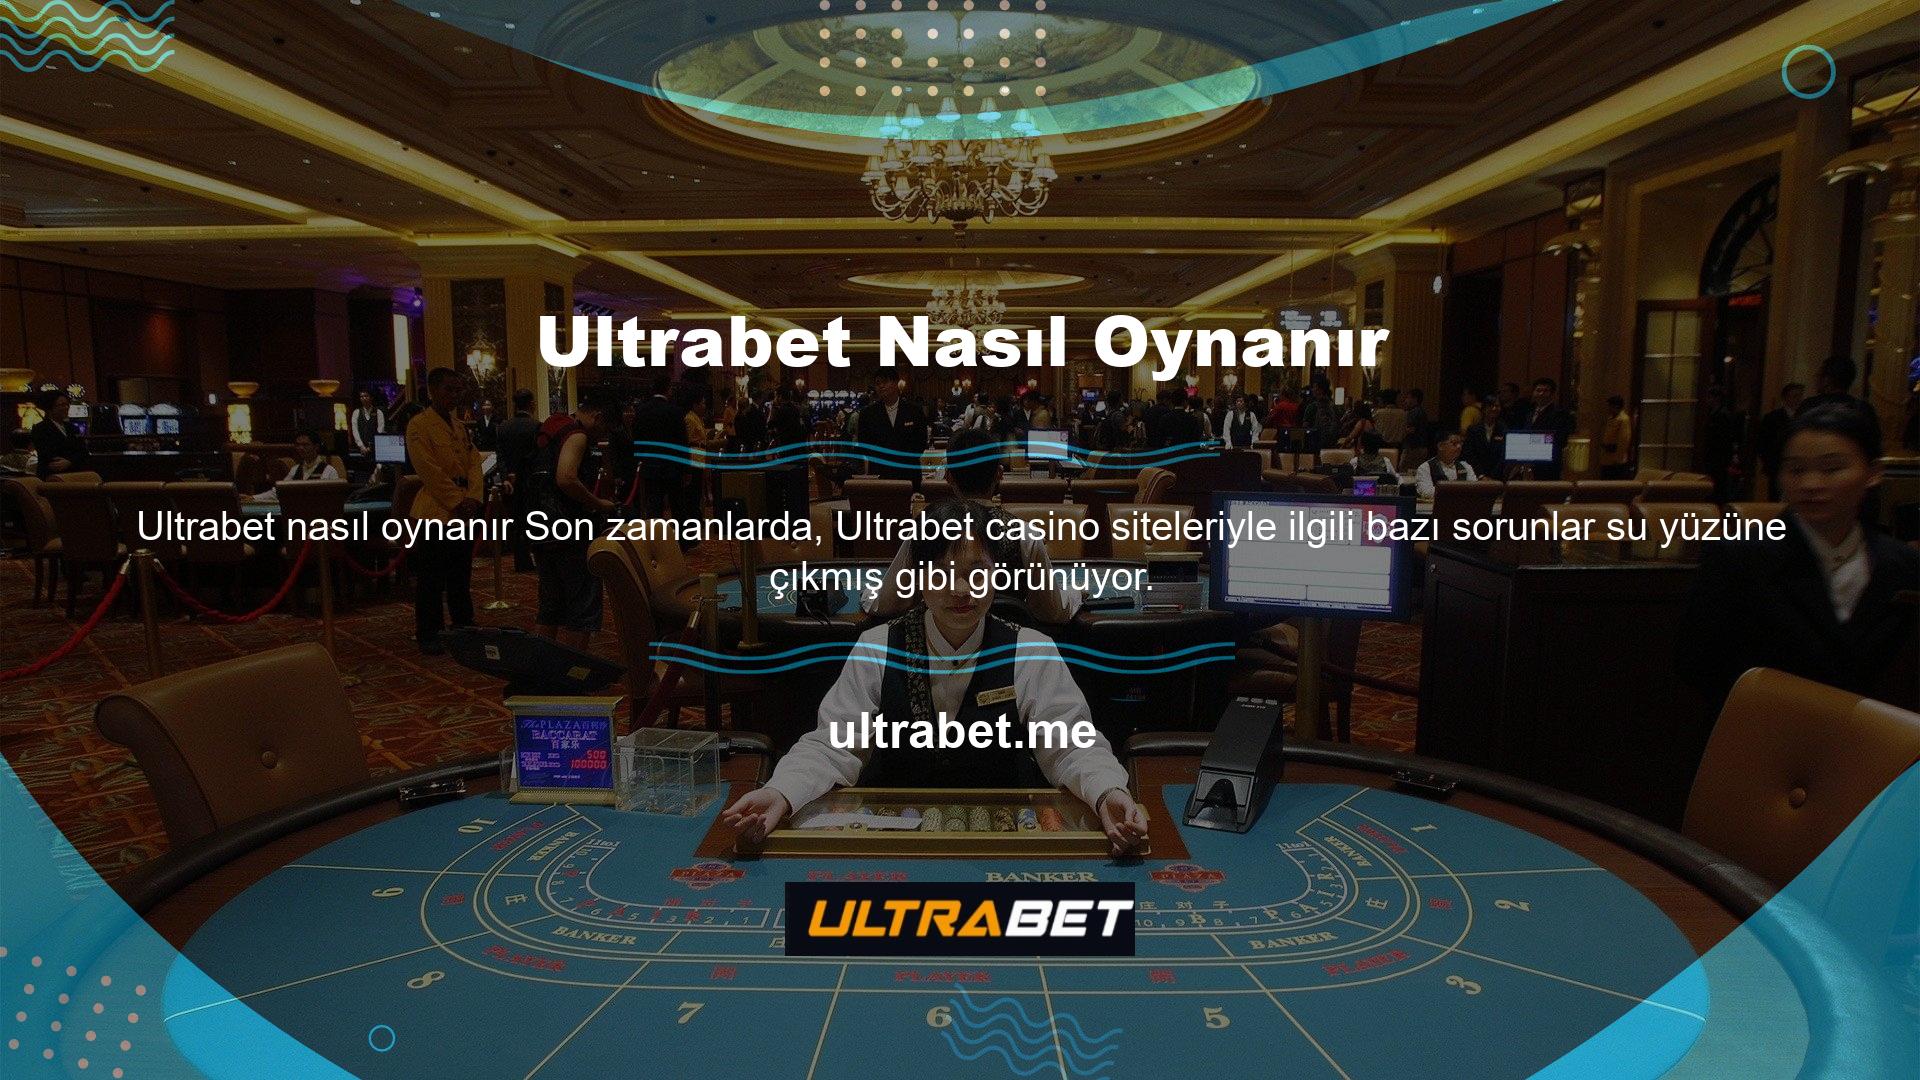 Ultrabet Canlı Casino nasıl oynanır bu sorular arasında çokça karşımıza çıkıyor